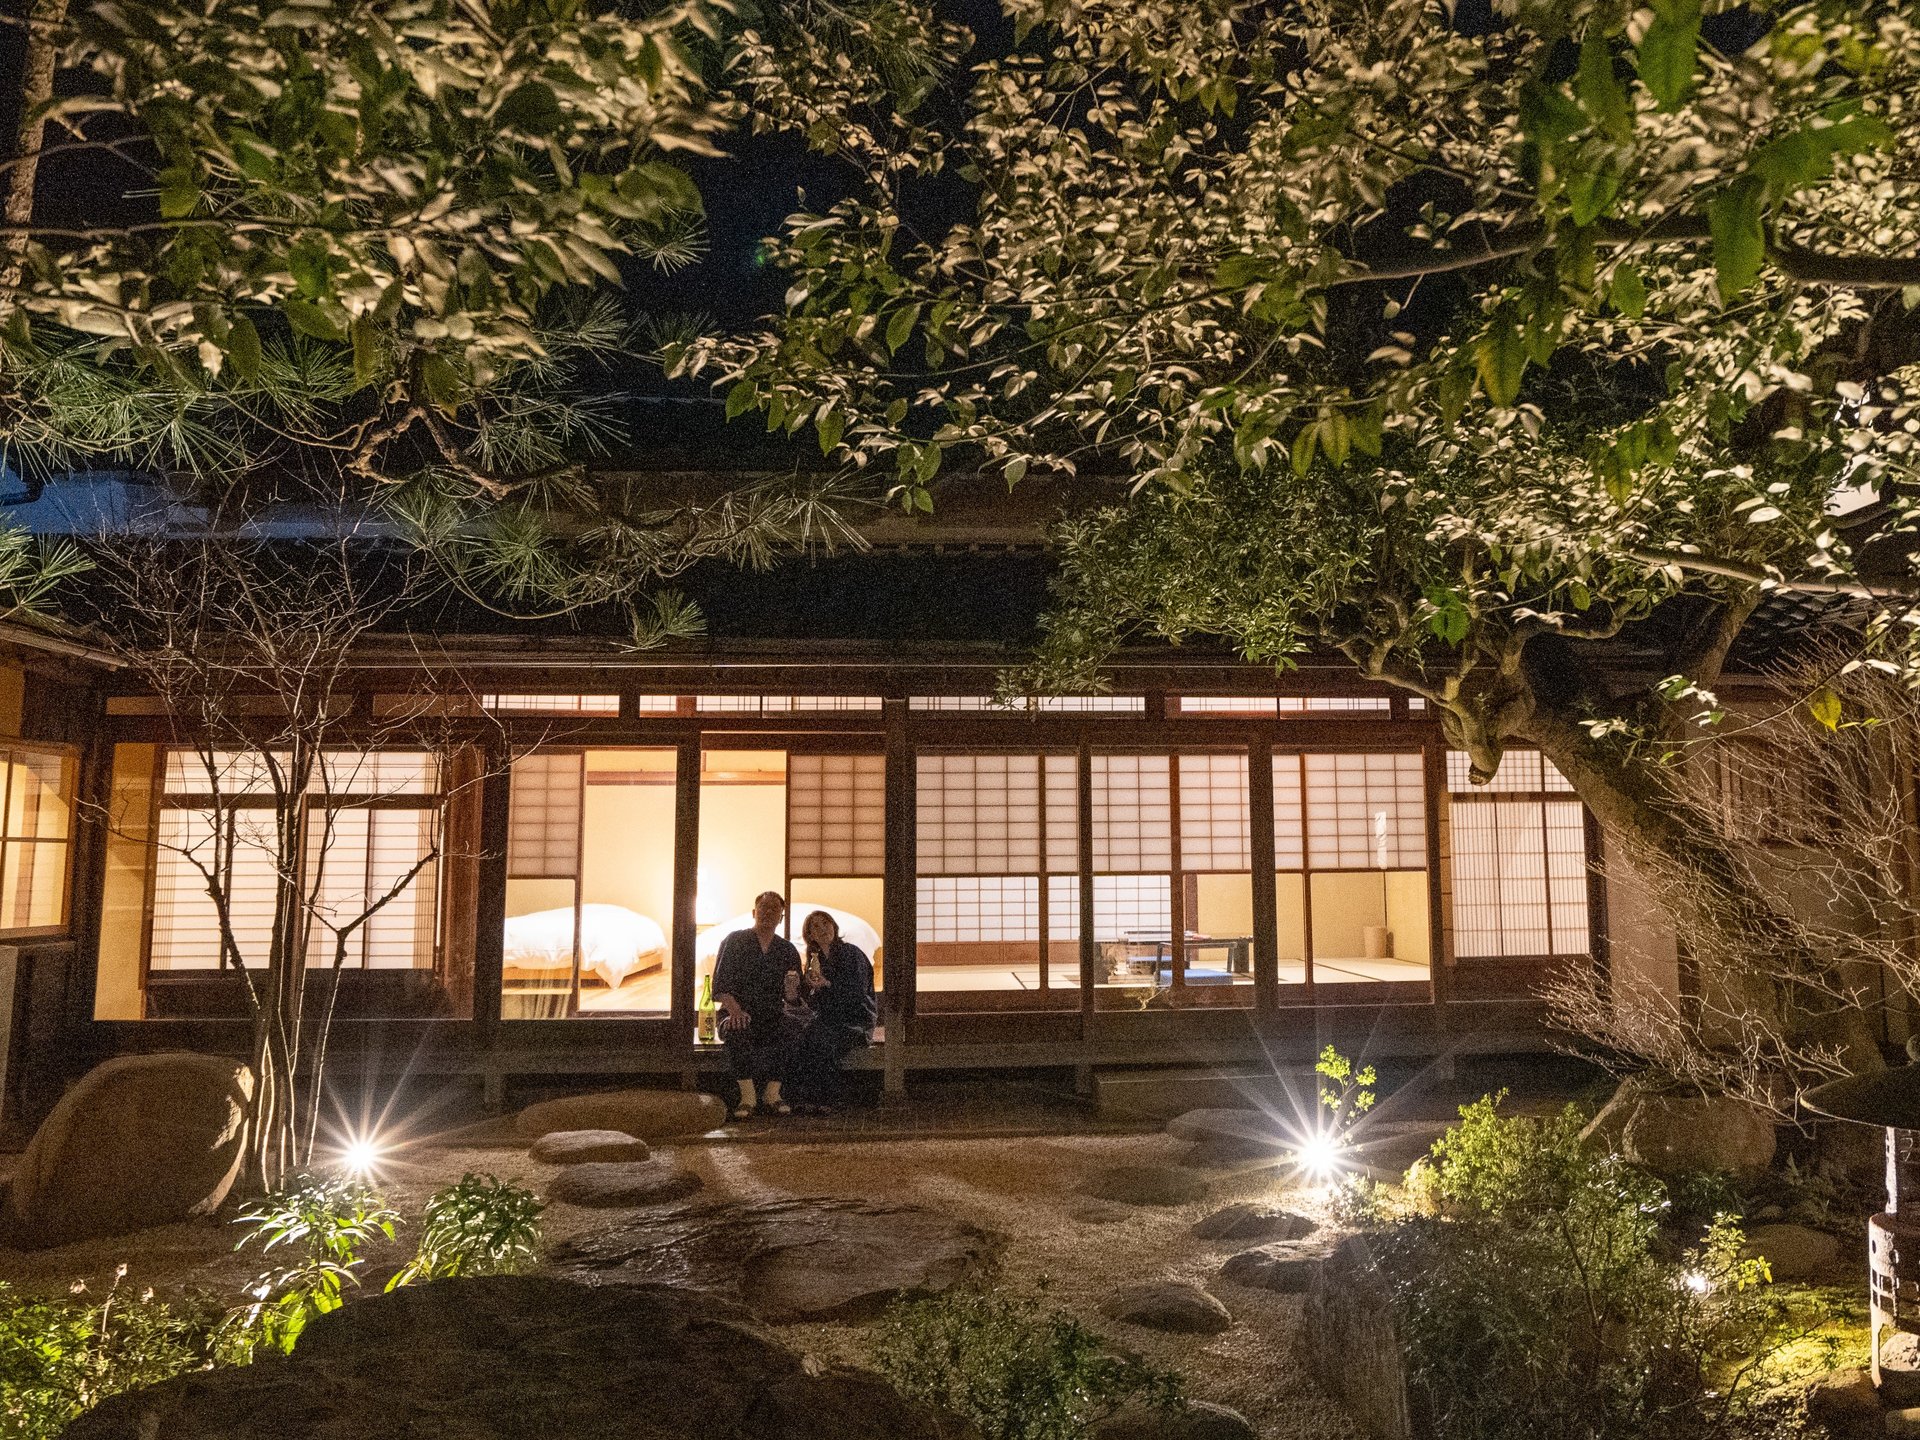 夫婦旅行は神話の聖地「島根県出雲市」で。歴史や文化に触れて人に話したくなる貴重な癒し体験をしよう